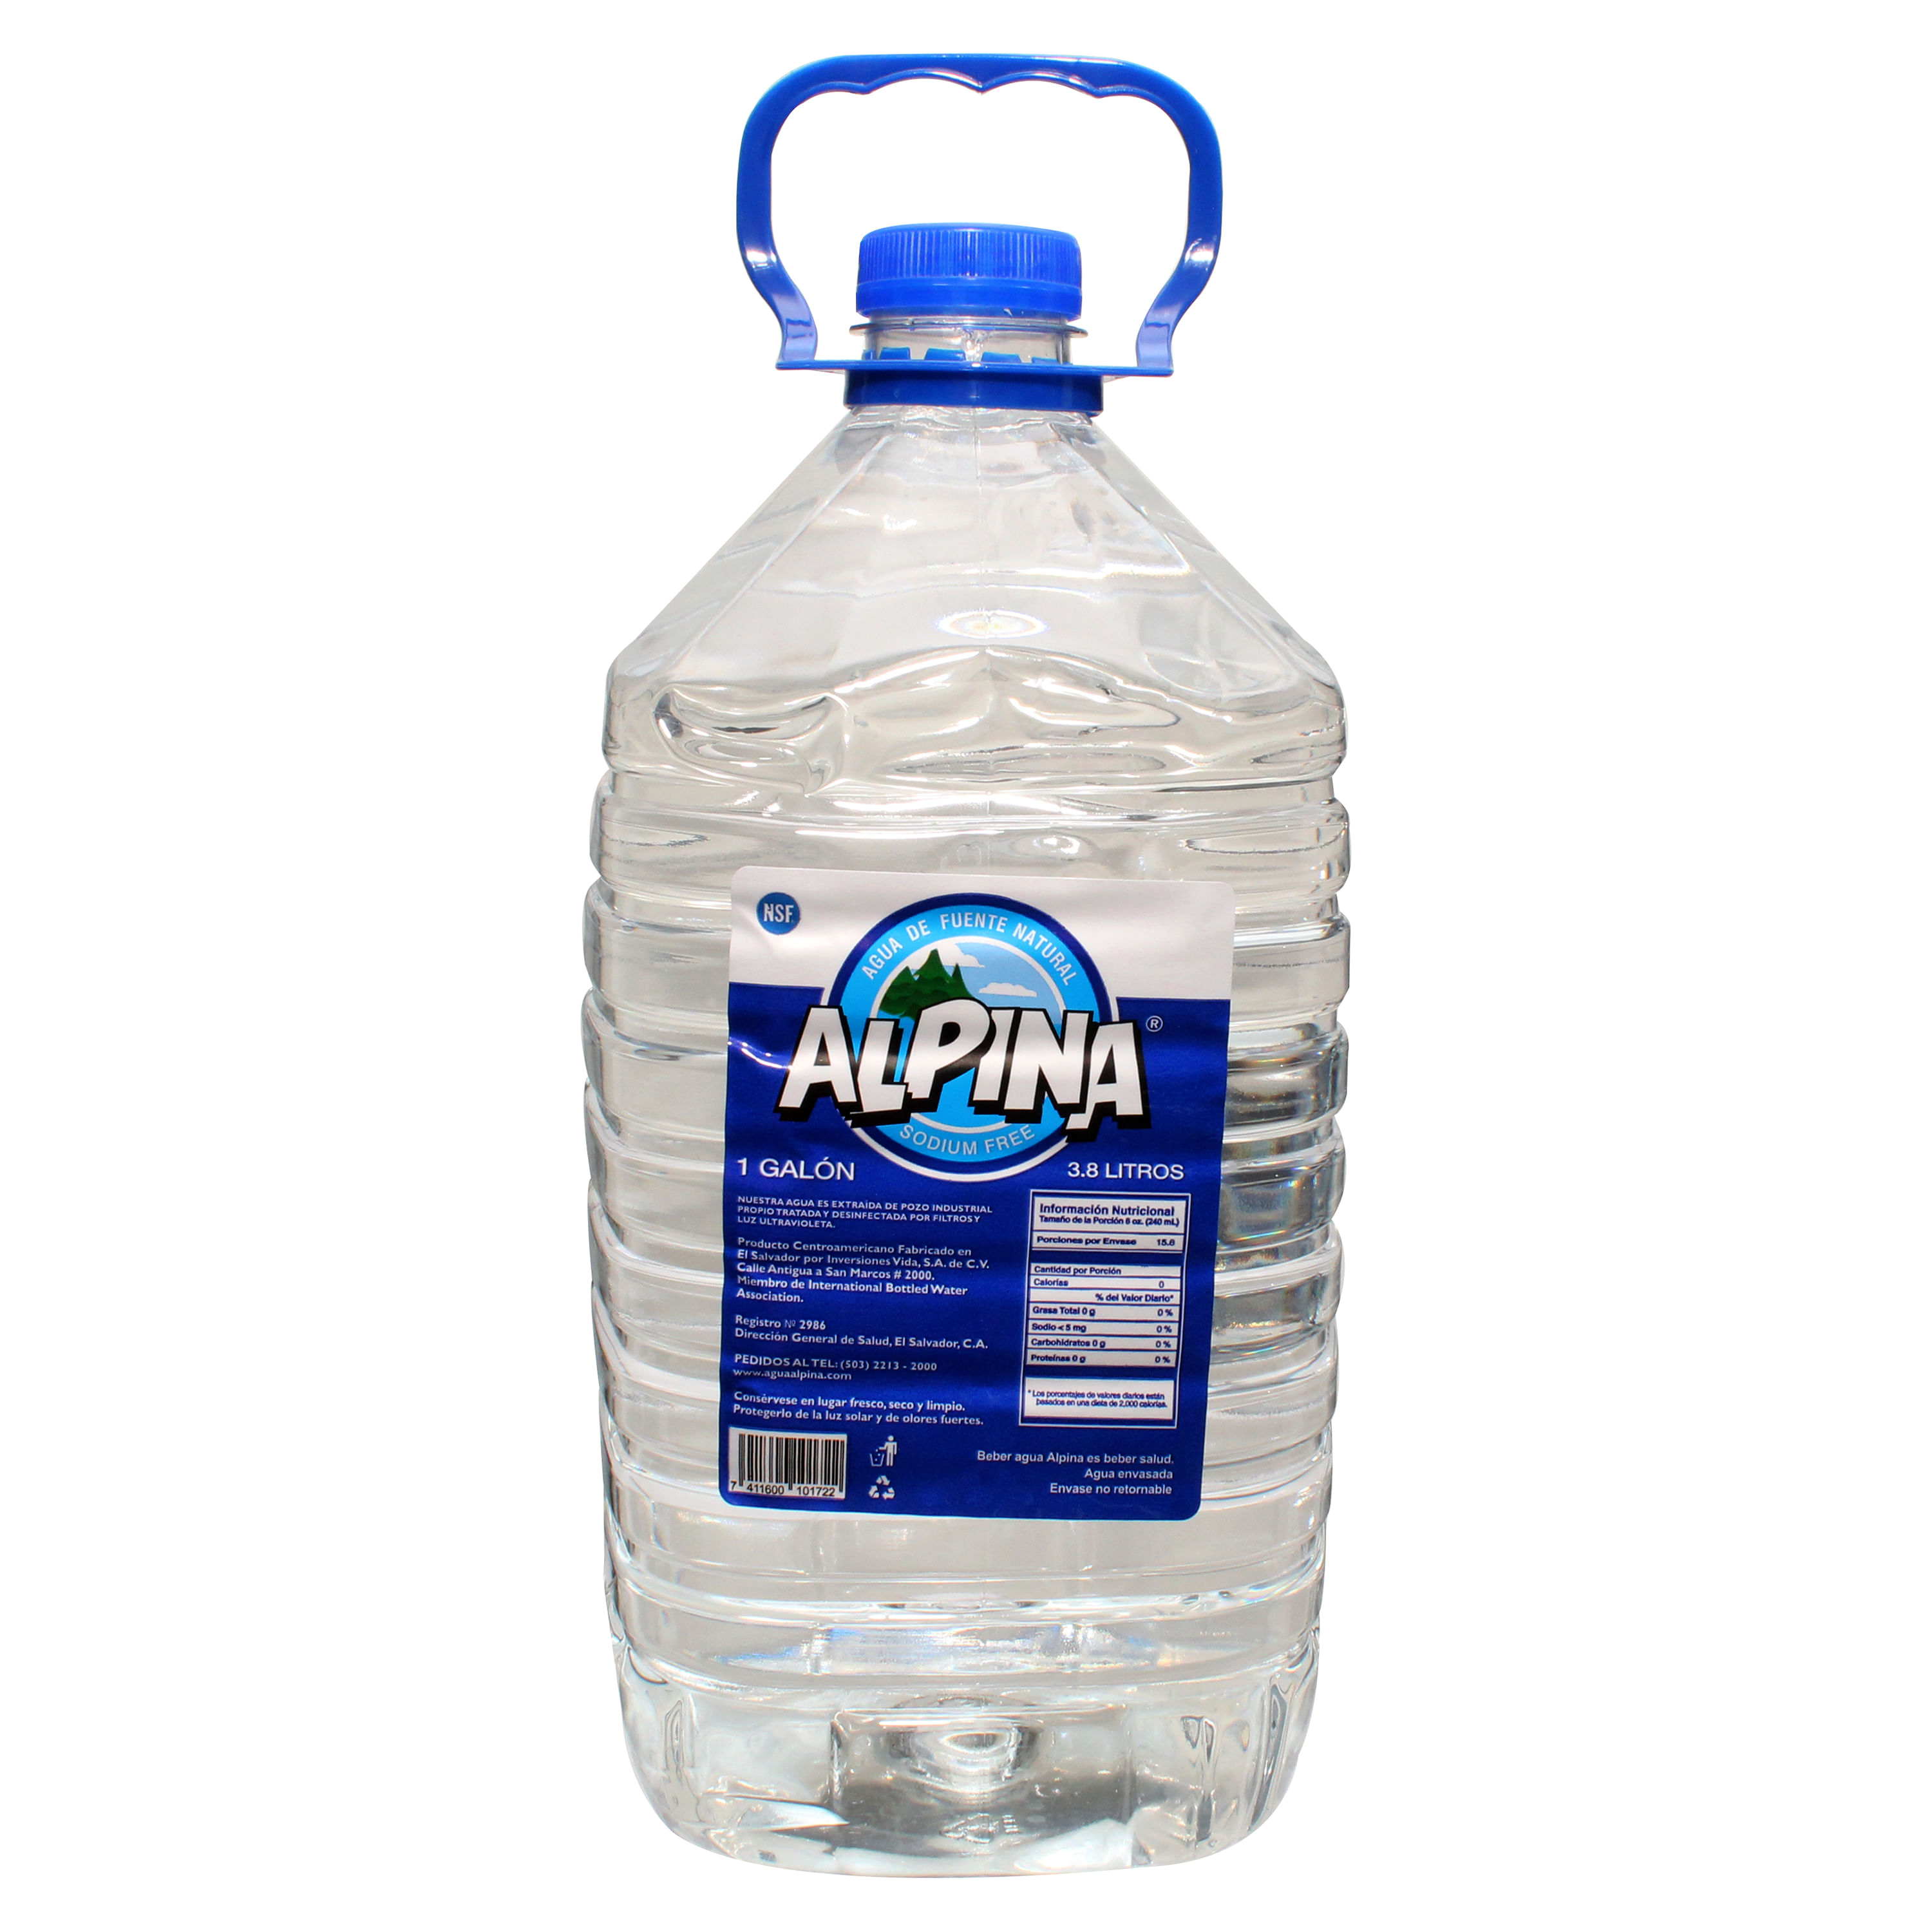 Comprar Agua Cristal Pet 355ml